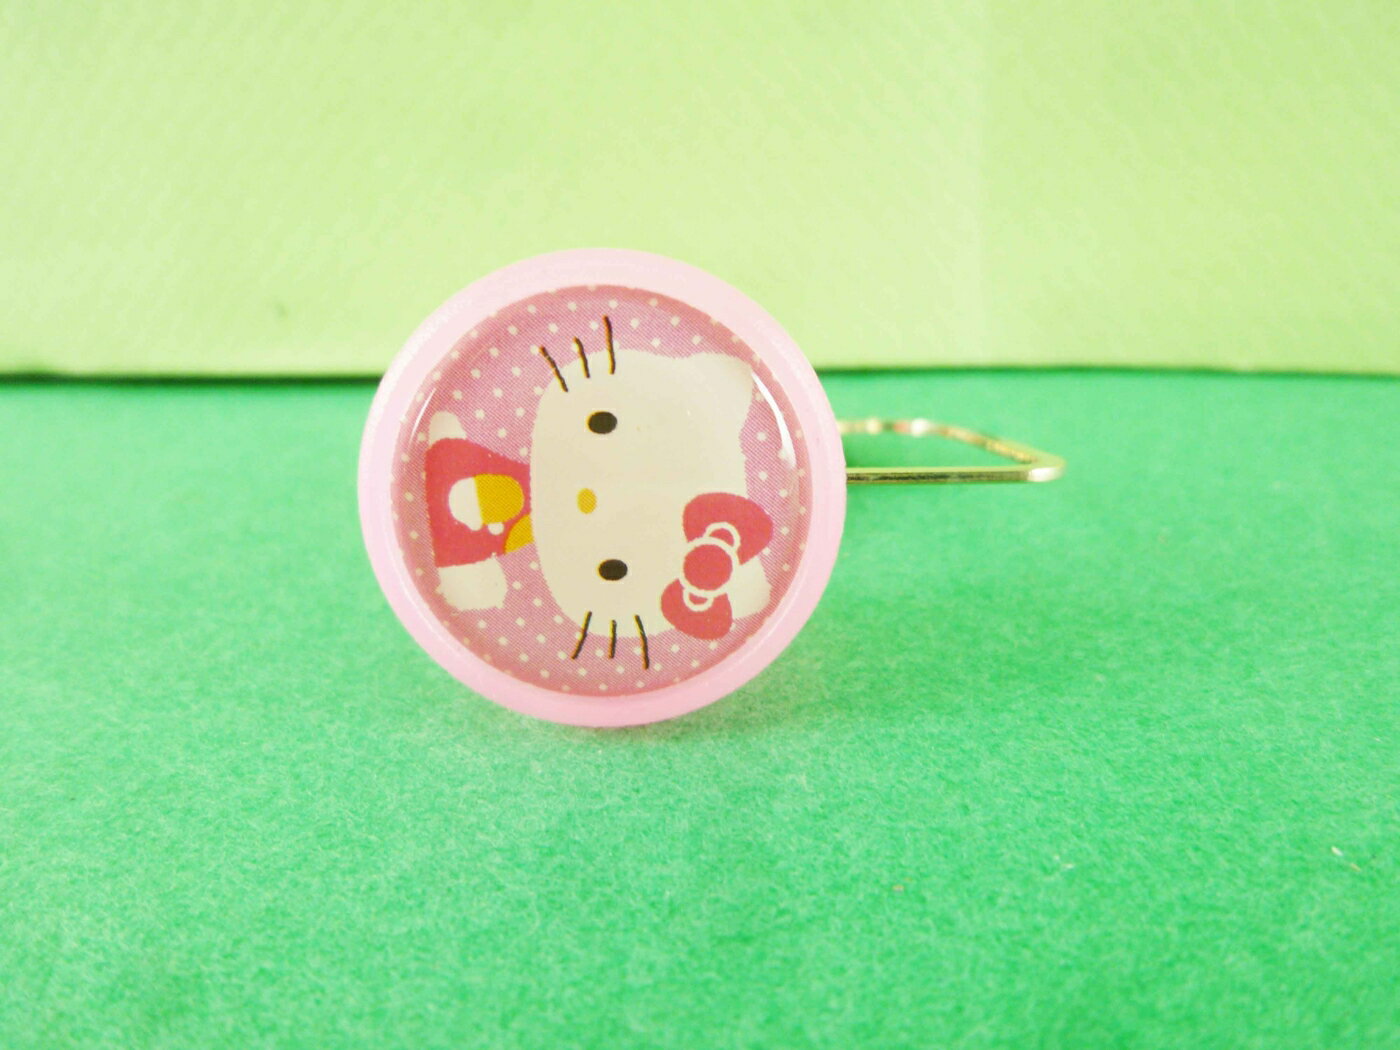 【震撼精品百貨】Hello Kitty 凱蒂貓 扣書籤-粉桃點側坐 震撼日式精品百貨